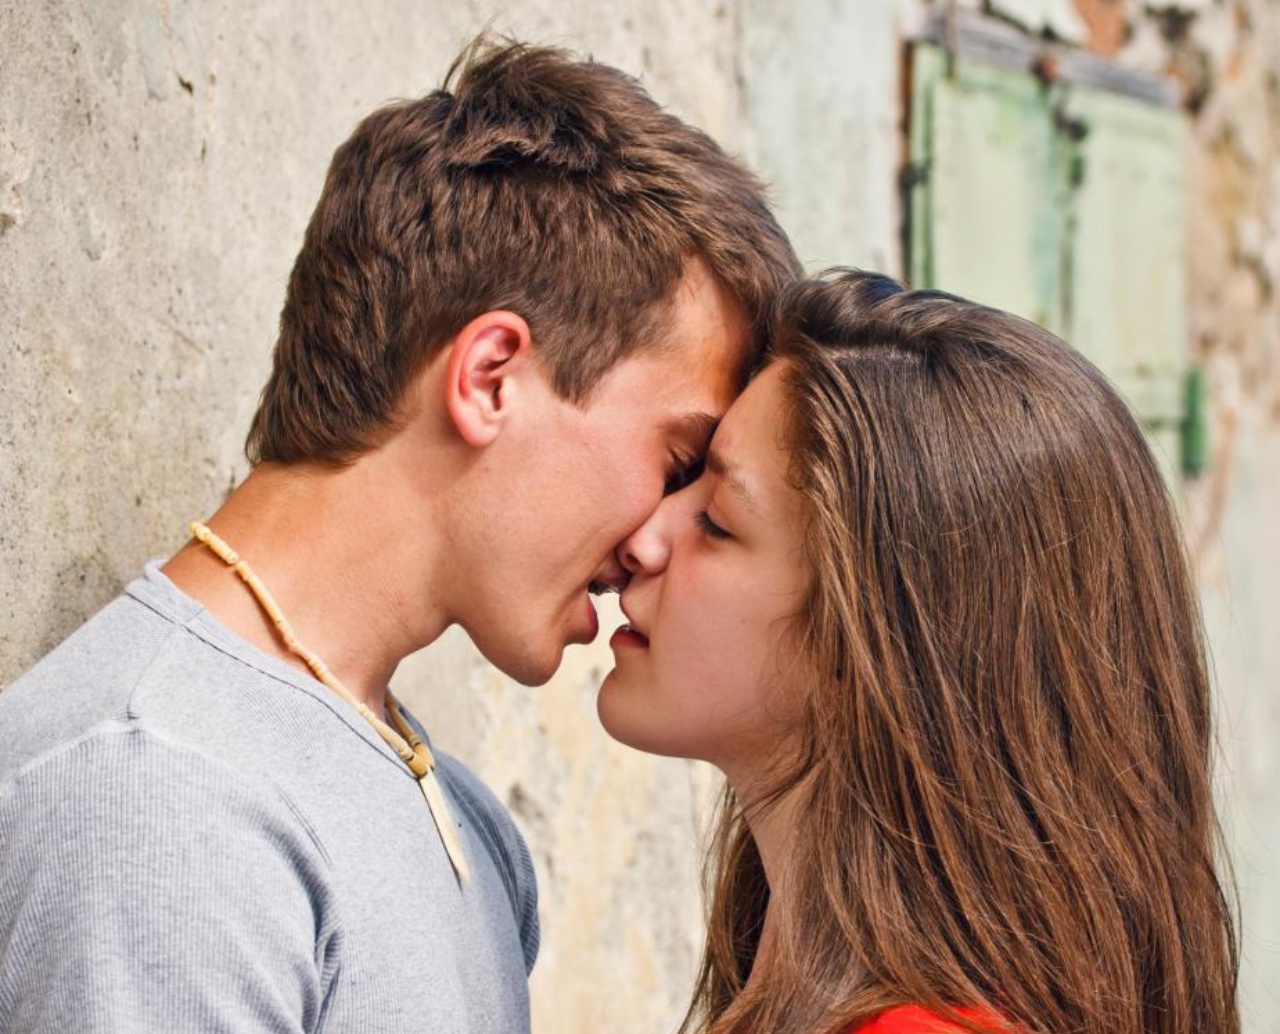 Как правильно целоваться в губы: виды поцелуев, без языка, взасос